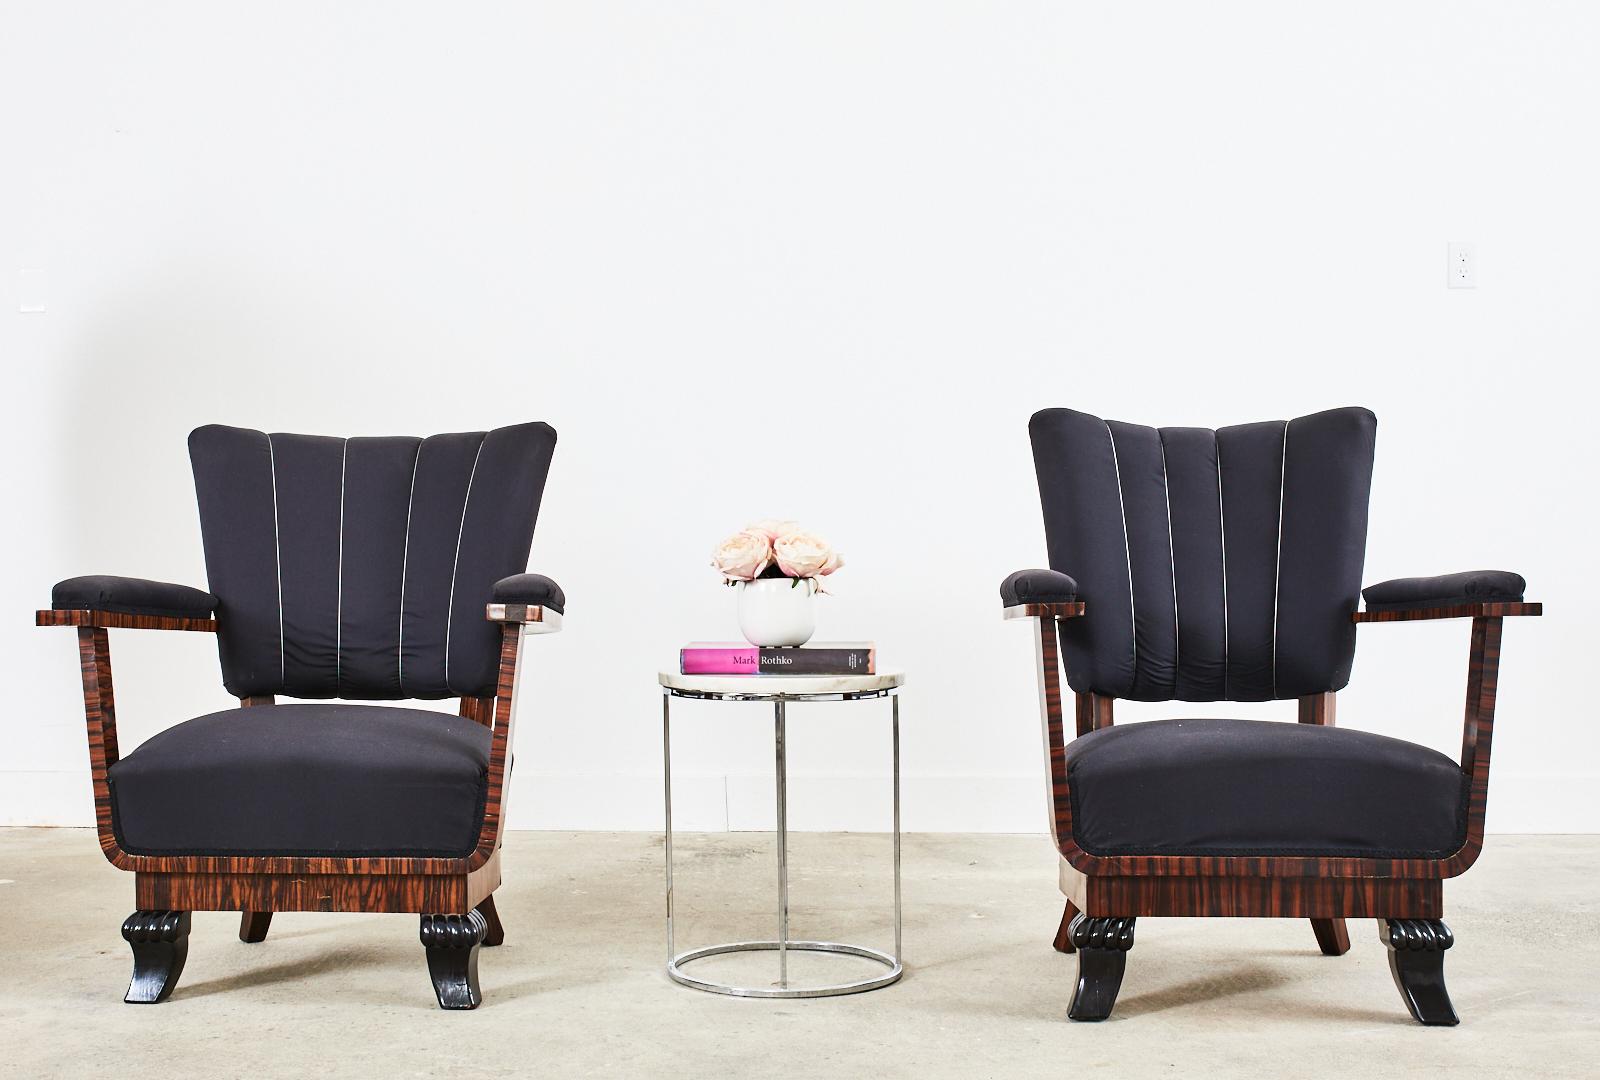 Fantastisches Paar französischer Sessel aus der Zeit des Art déco, die ein einzigartiges architektonisches, offenes Design mit U-förmigen Armstützen und breiten, flachen Armlehnen aufweisen. Das Design wird durch ein opulentes Makassar-Furnier